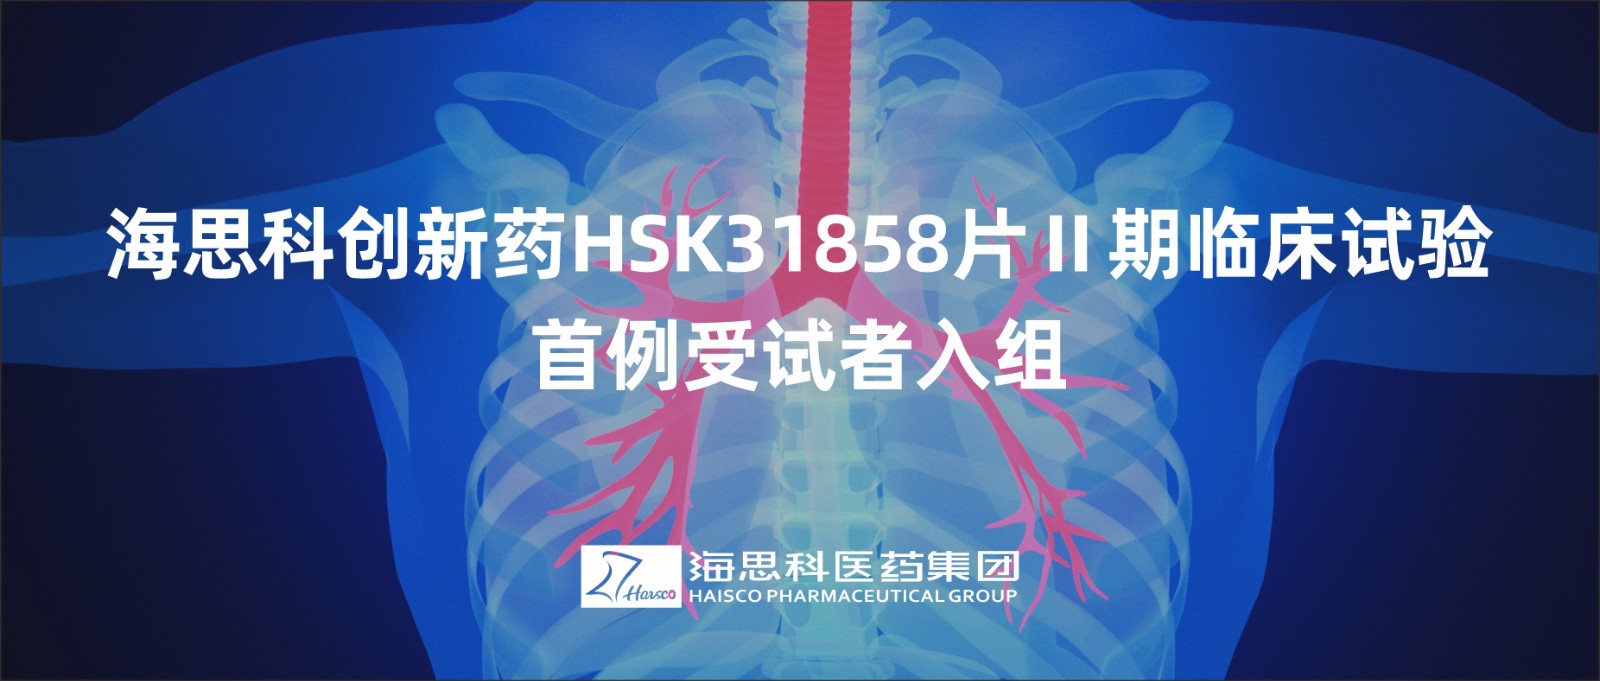 海思科创新药HSK31858片Ⅱ期临床试验首例受试者入组